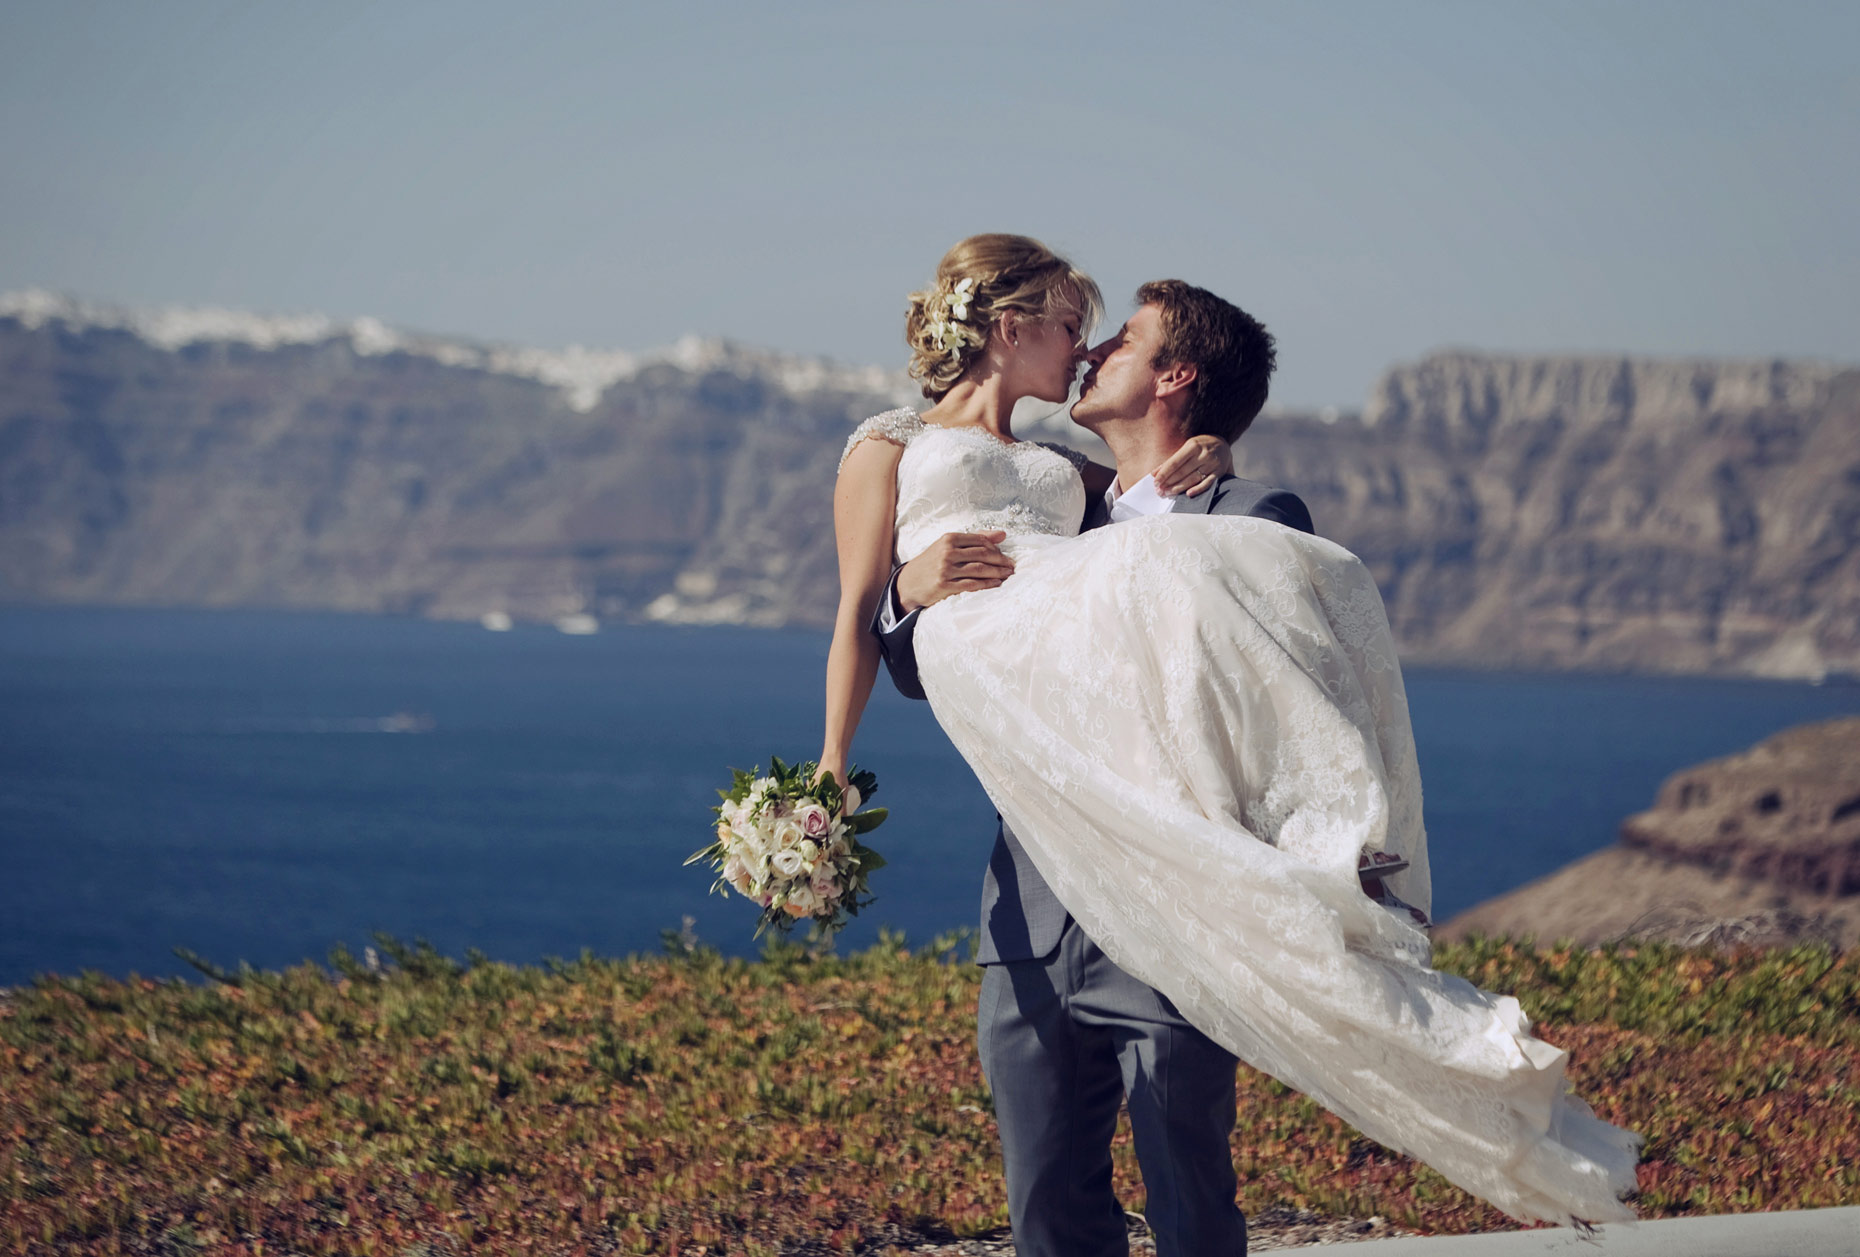 santorini wedding and elopement phoographer